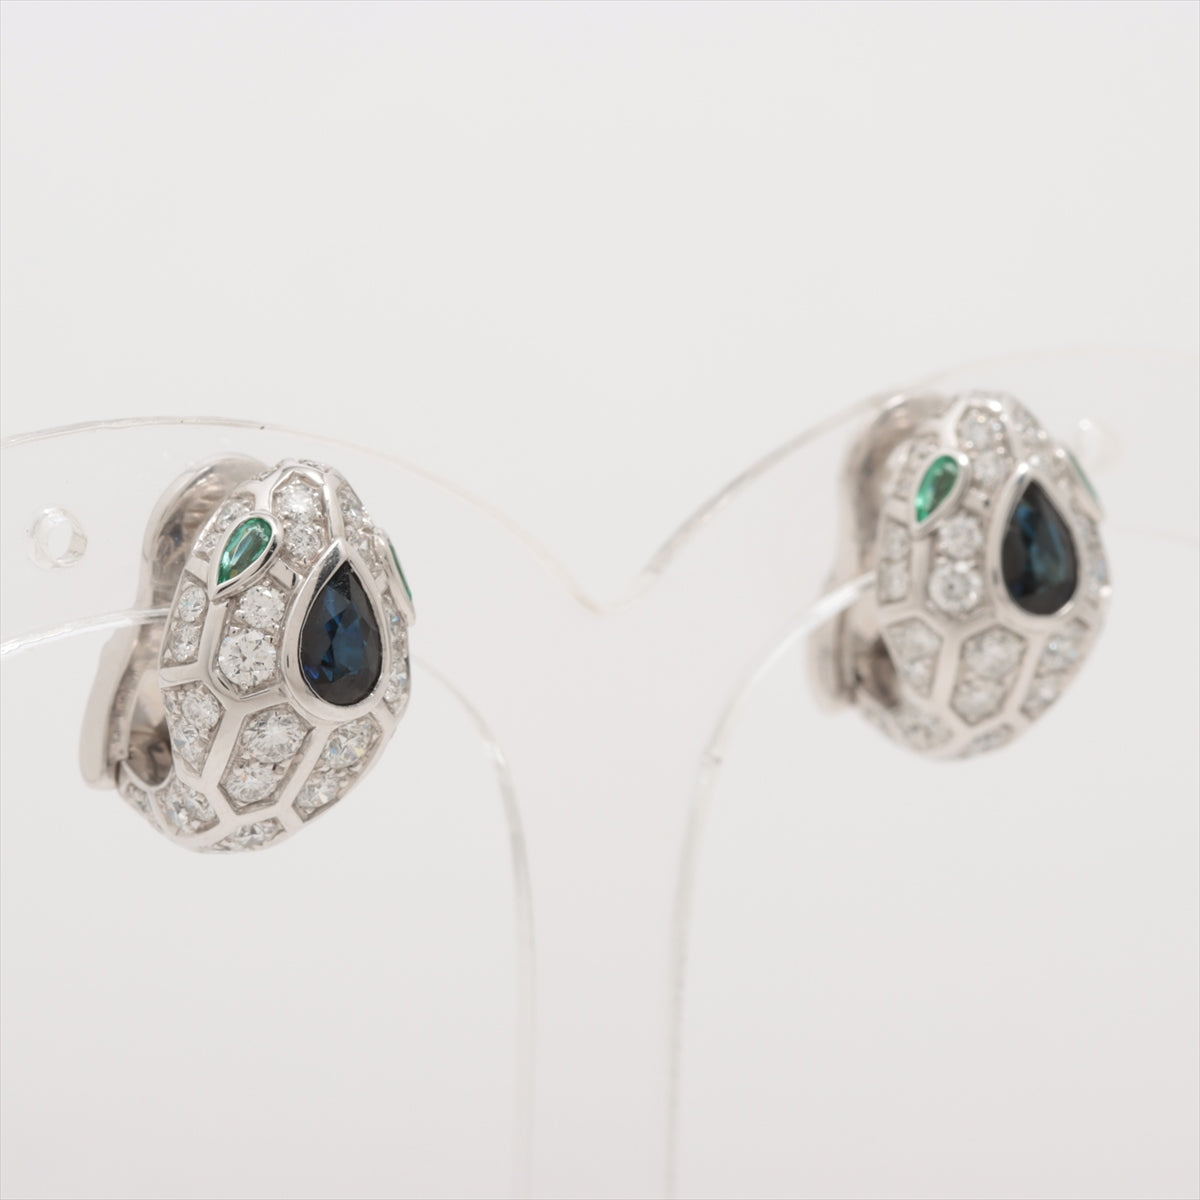 Bvlgari Serpenti diamond Sapphire Emerald Piercing jewelry 750(WG) 10.5g